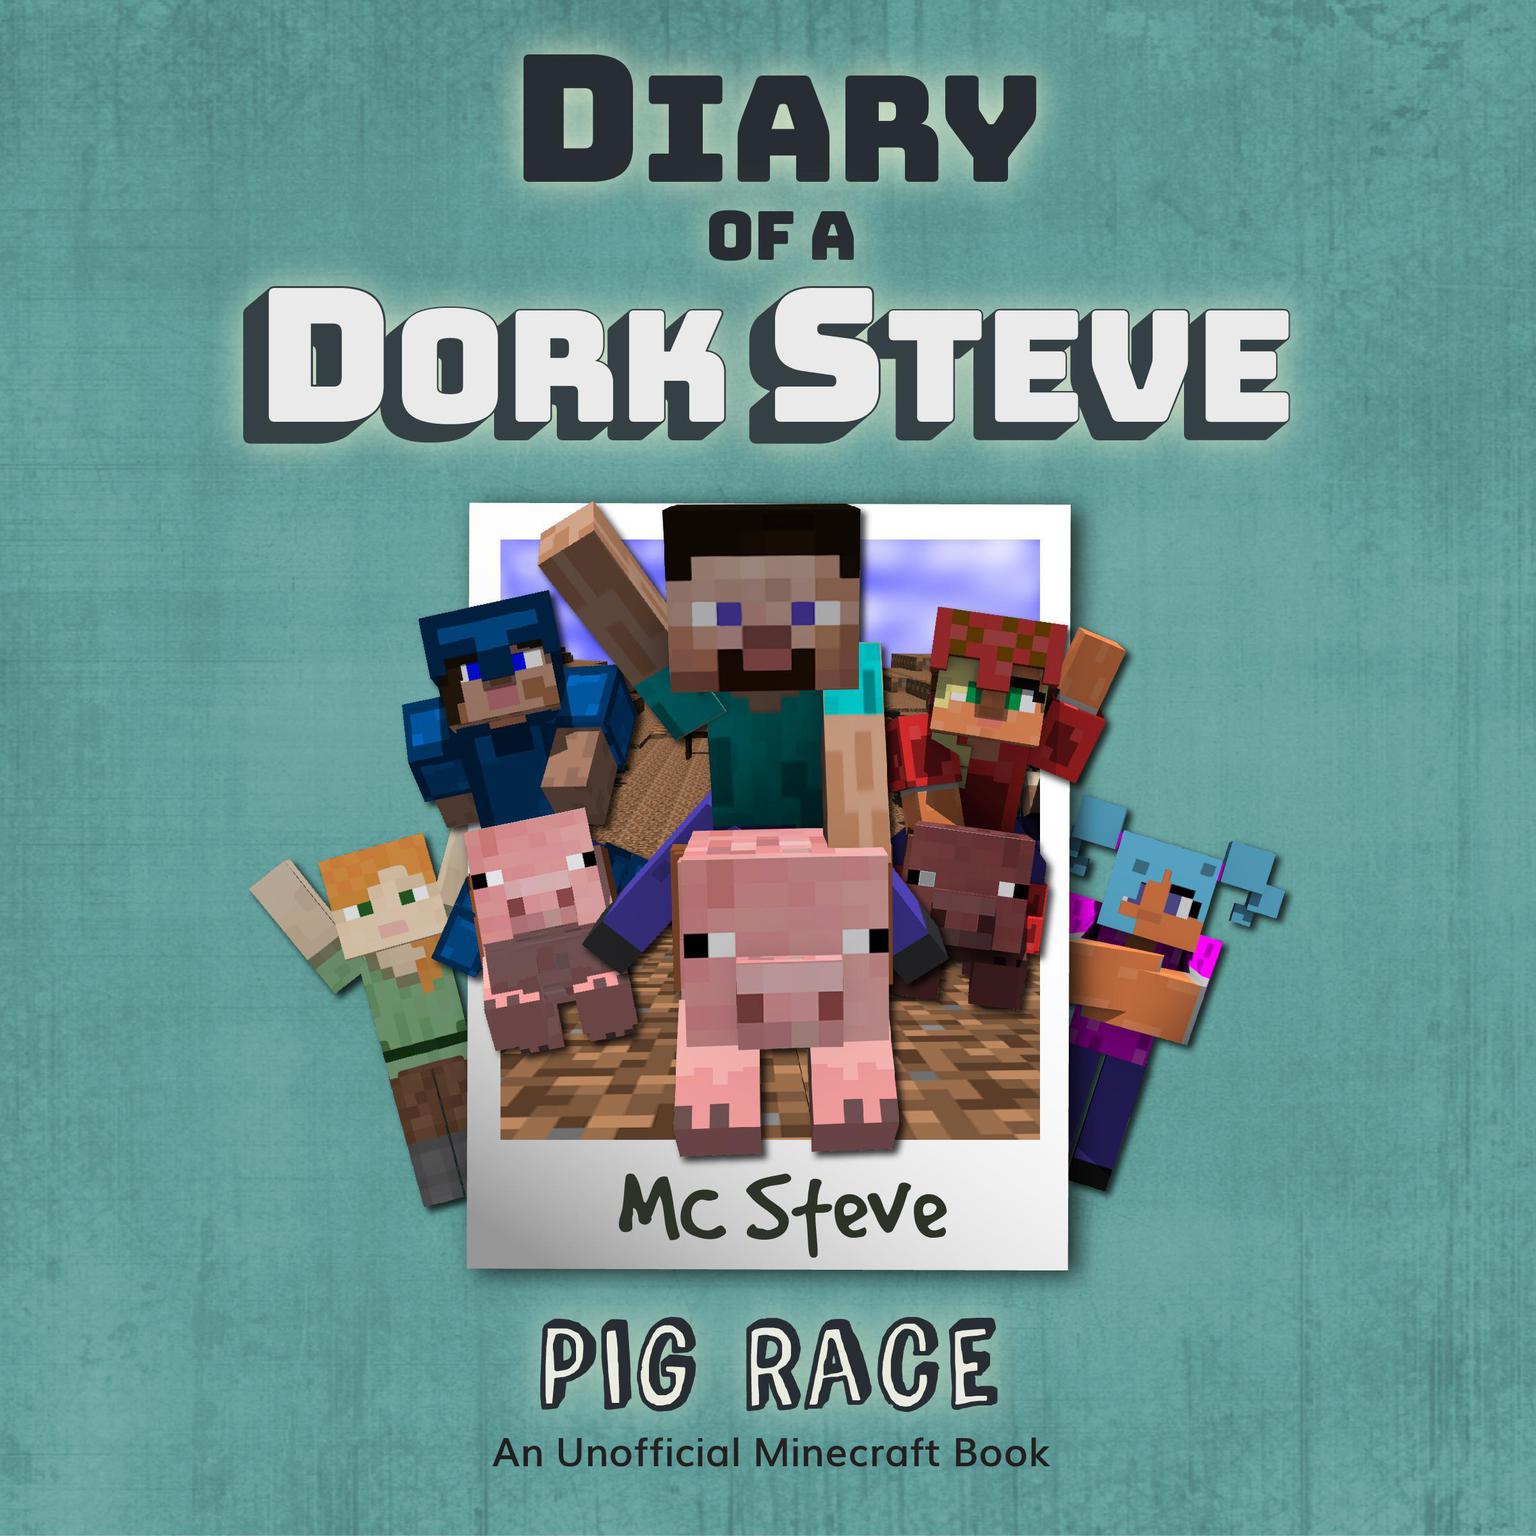 Diary of a Minecraft Dork Steve Book 4: Pig Race (An Unofficial Minecraft Diary Book) Audiobook, by MC Steve